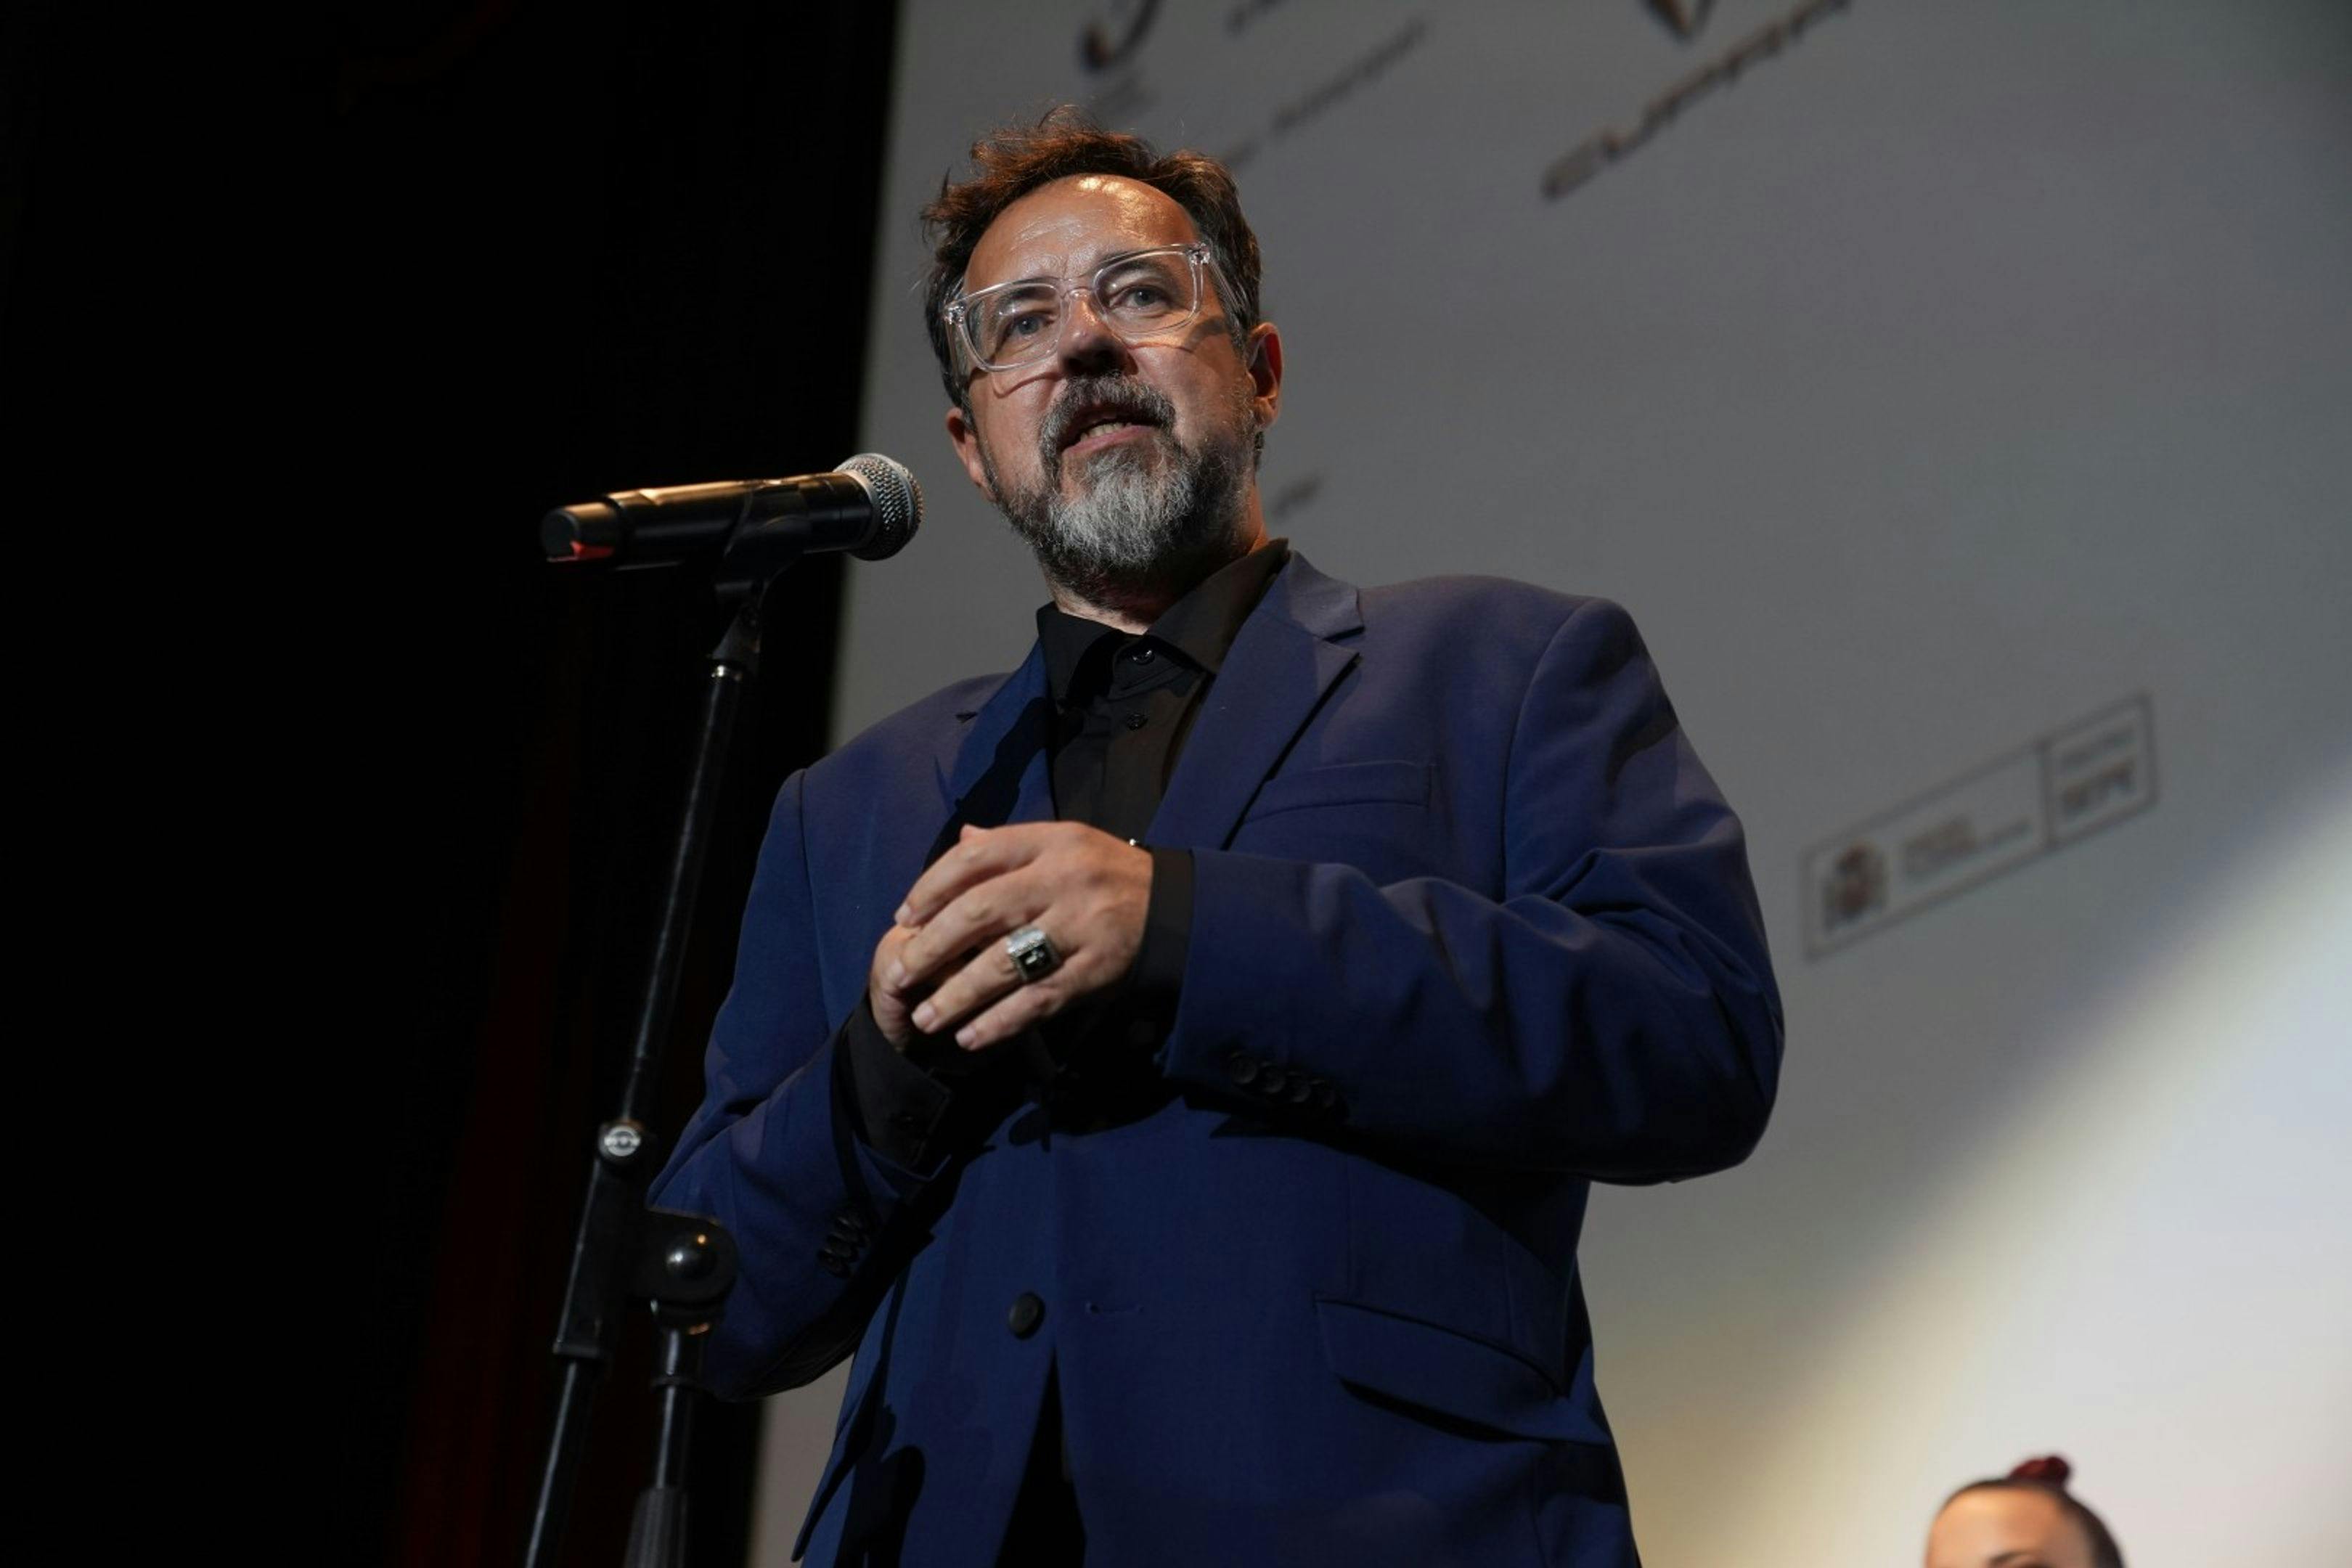 El director Paco Plaza presentando su película 'Hermana muerte' en la inauguración del Festival de Sitges 2023